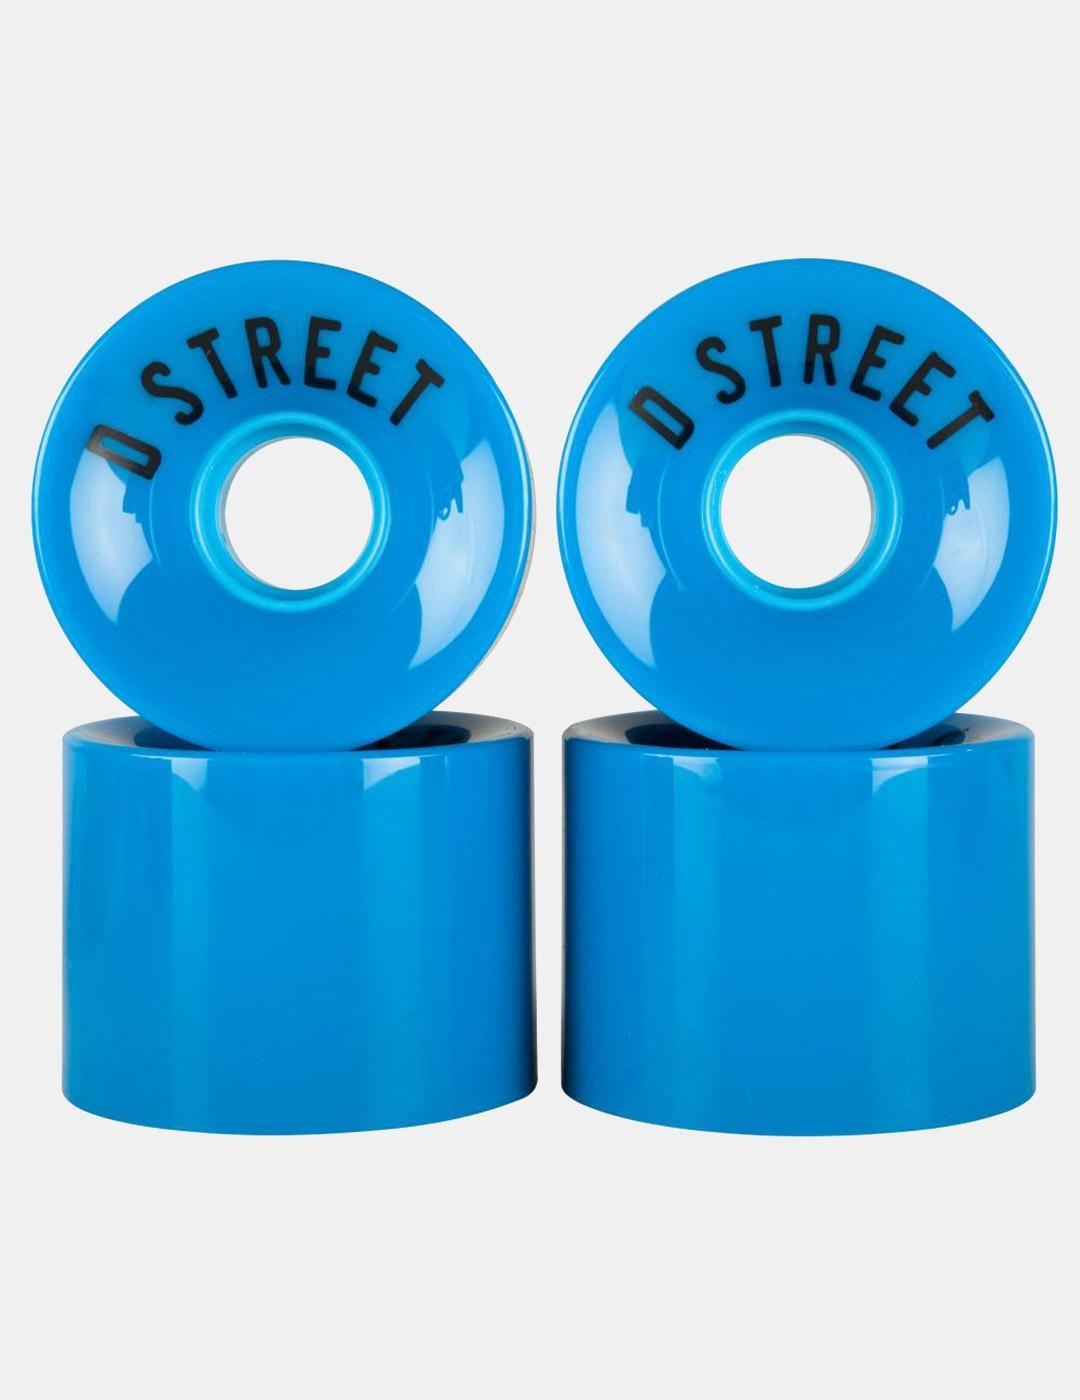 Ruedas D STREET 59 CENT 78A - Blue